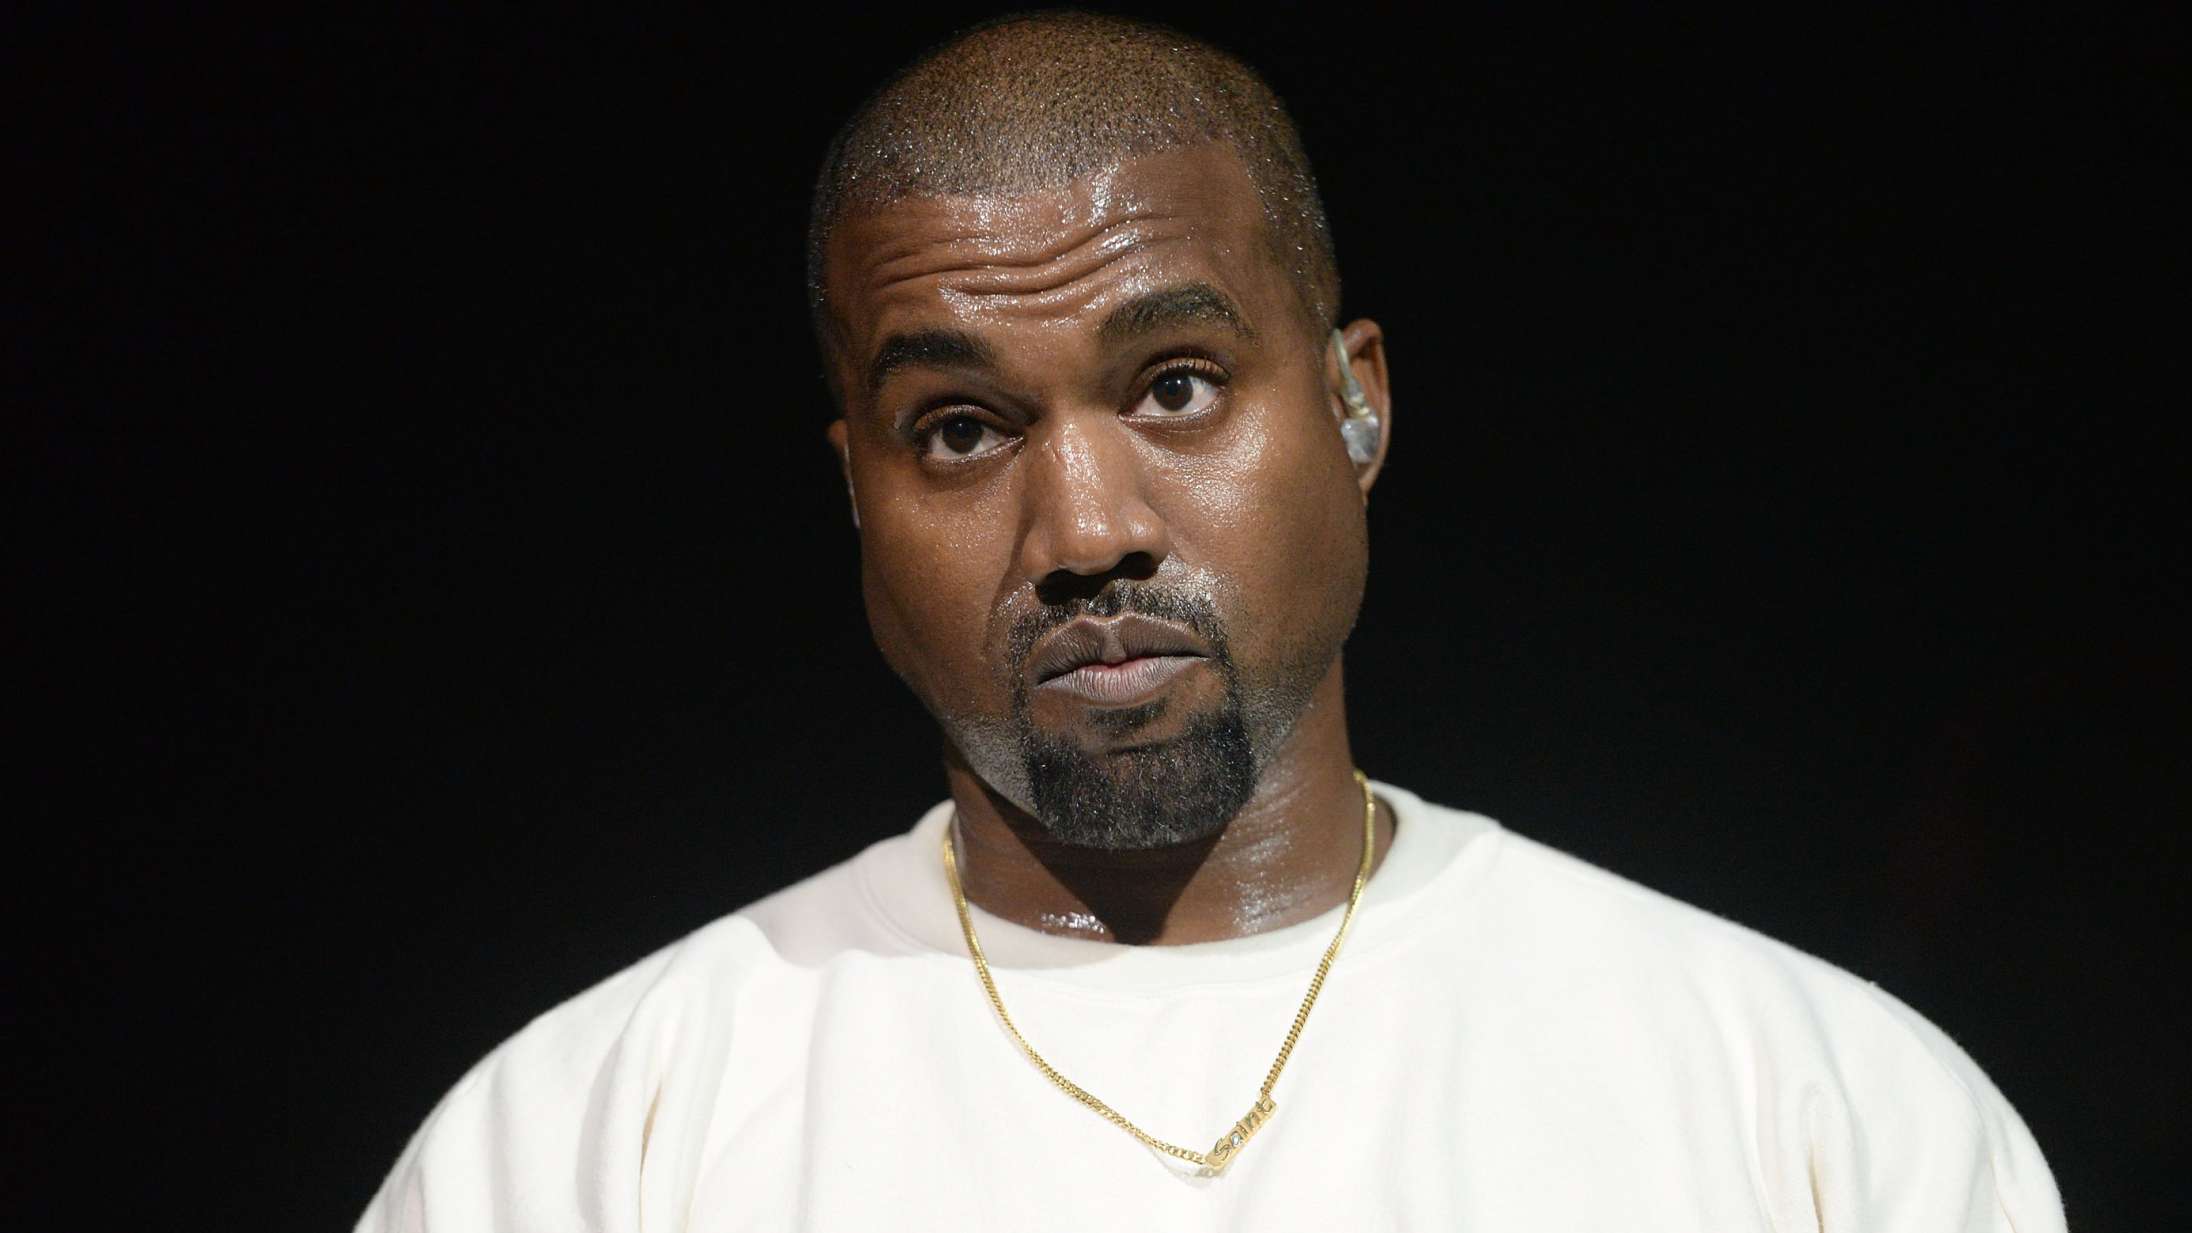 Præst sagsøger Kanye West for at sample hans prædiken uden tilladelse